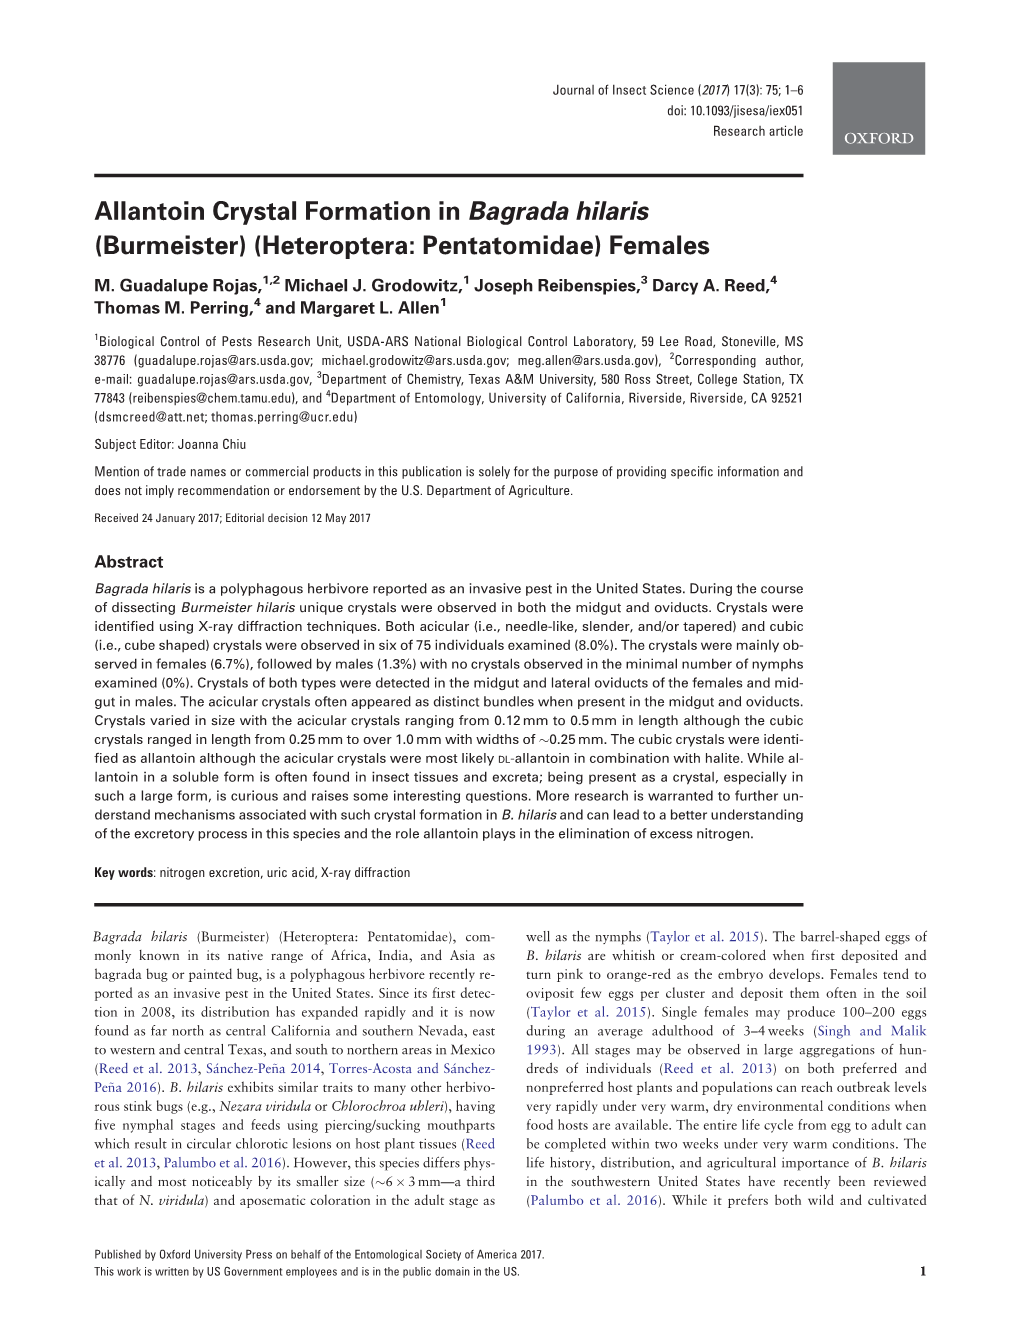 Allantoin Crystal Formation in Bagrada Hilaris (Burmeister) (Heteroptera: Pentatomidae) Females